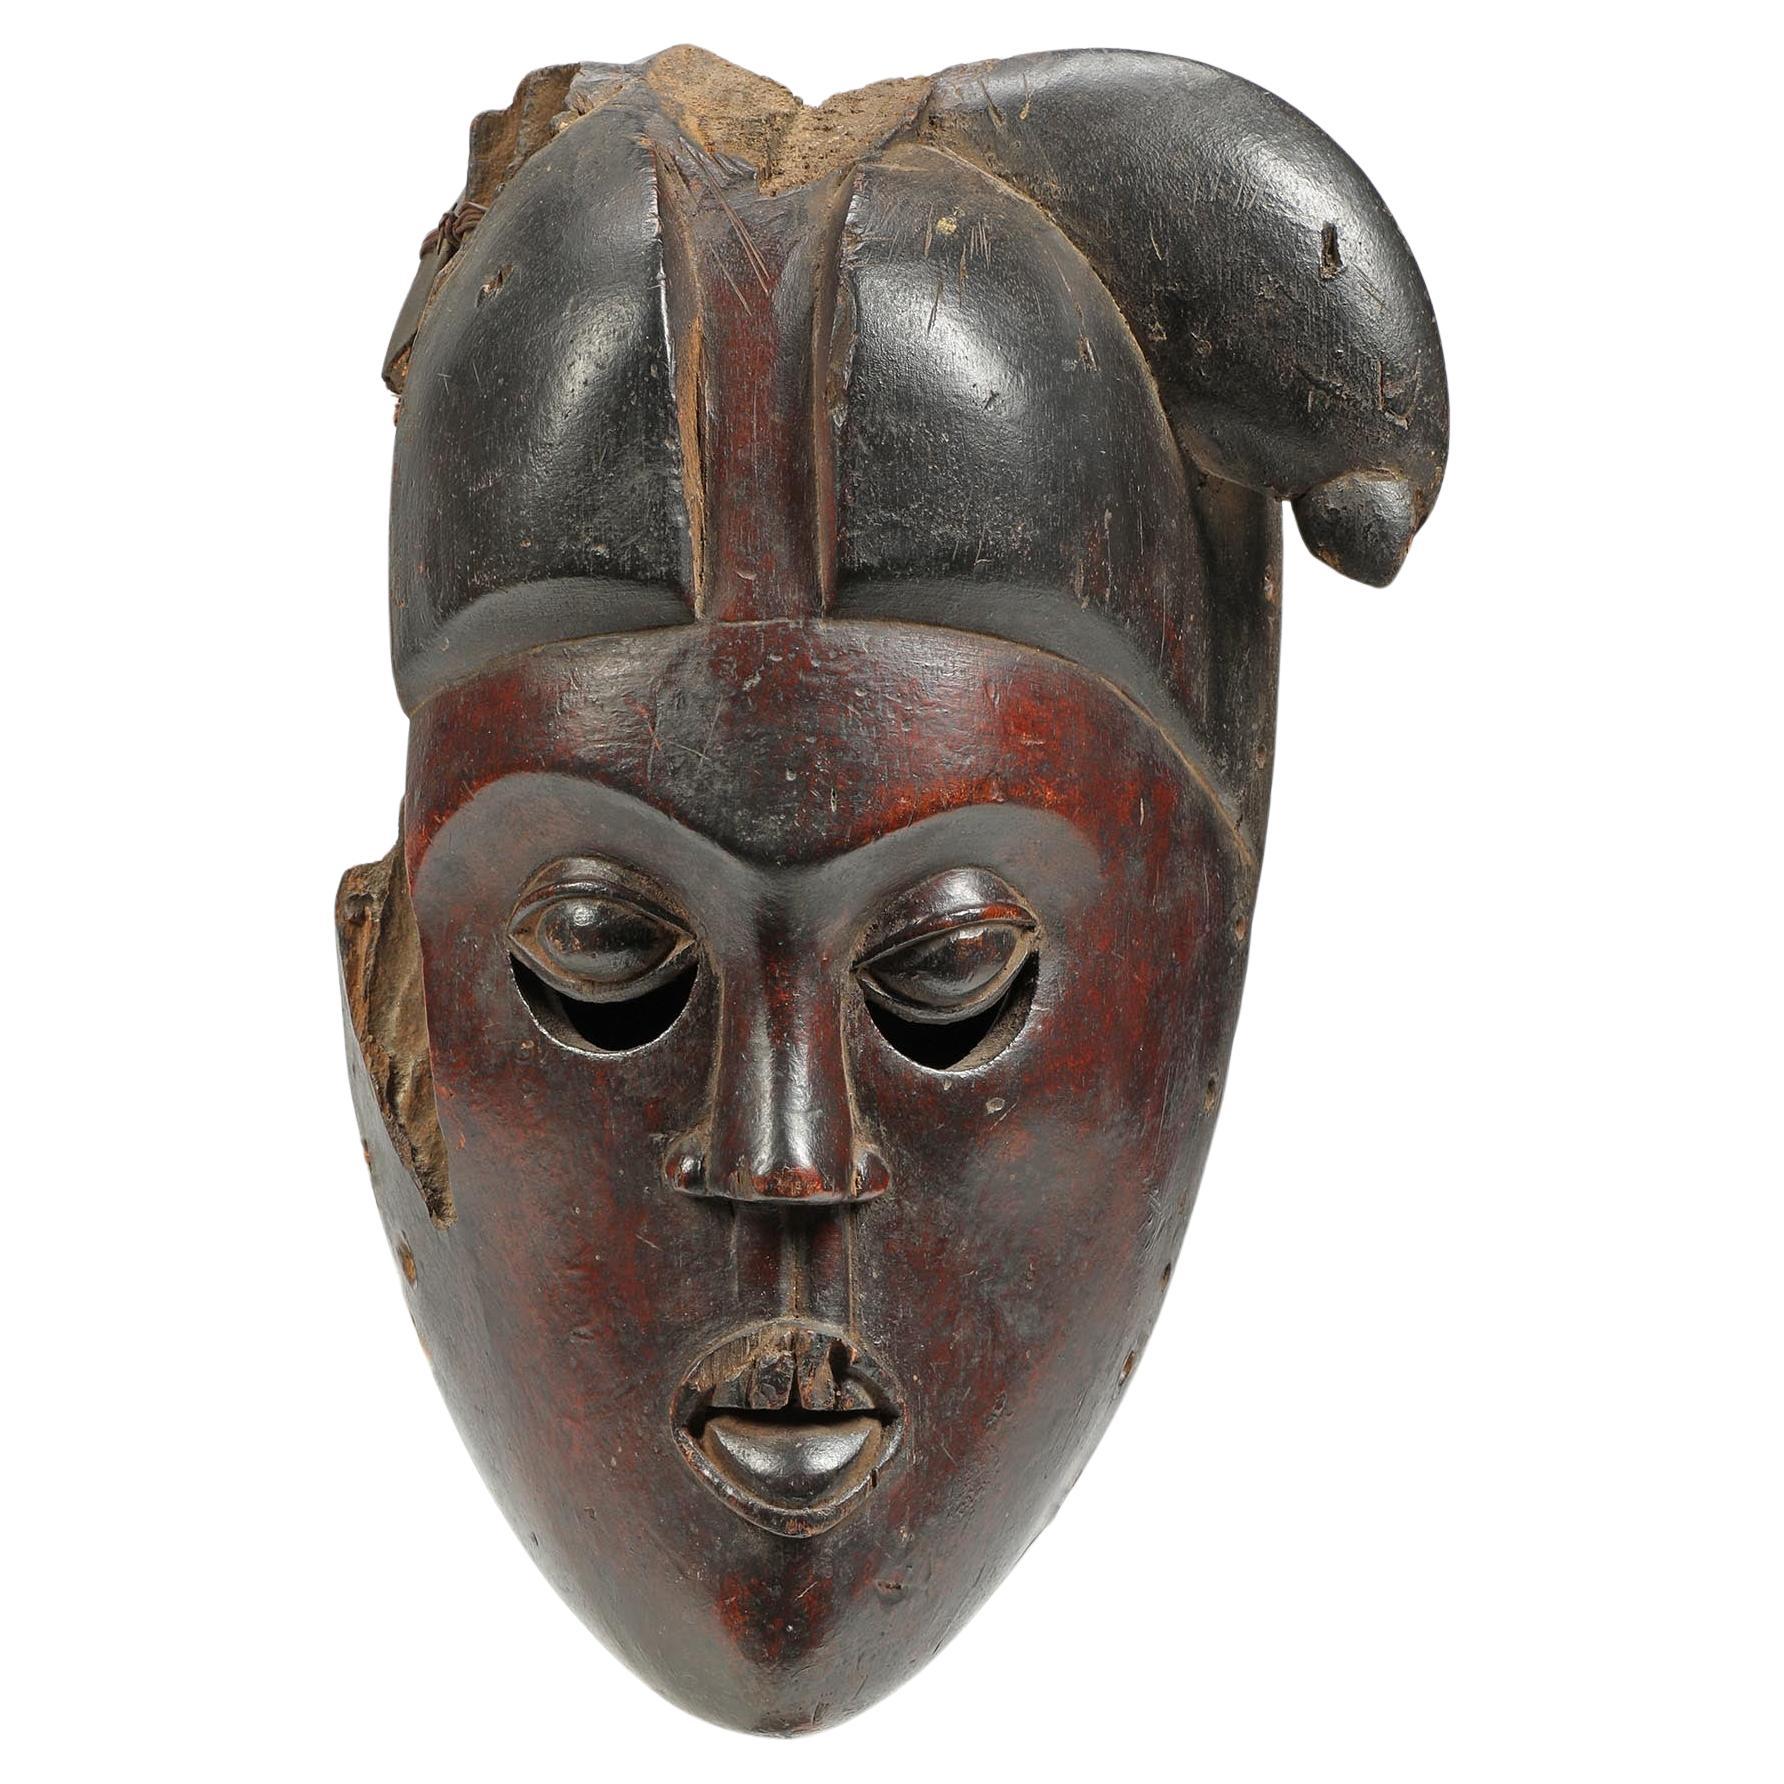 Frühes Ibibio-Maske-Fragment, dunkelrotes Gesicht, ausdrucksstarke Augen, frühes 20. Jahrhundert Afrika